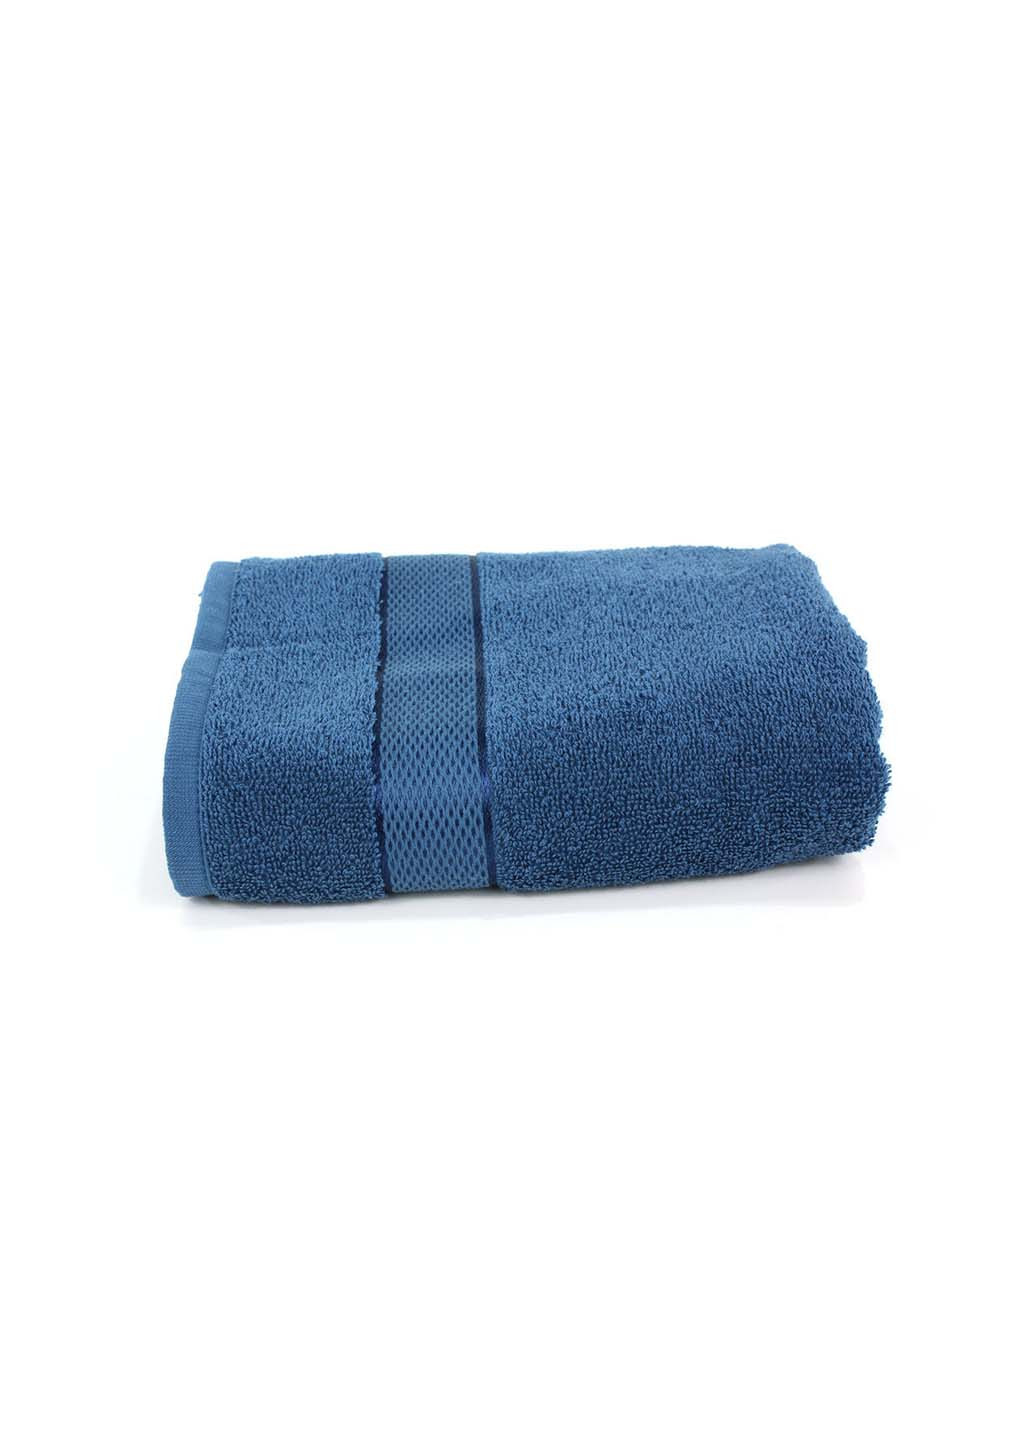 Еней-Плюс полотенце махровое бс0015 50х90 синий производство - Украина